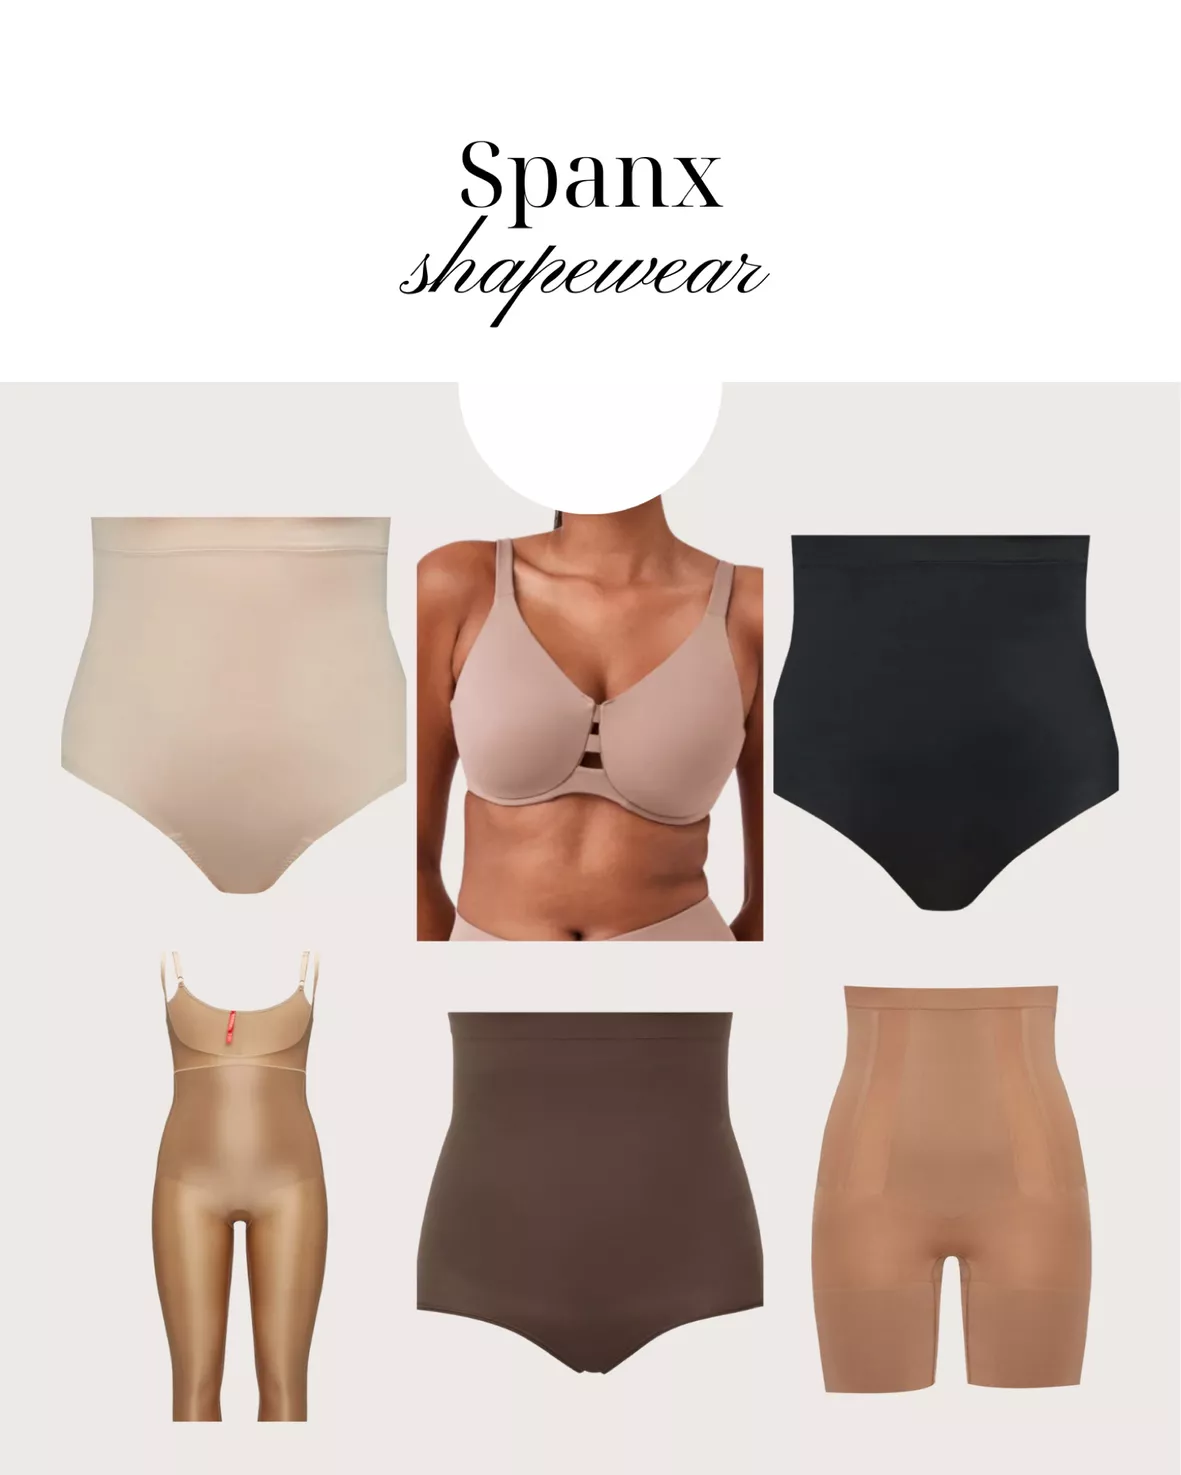 SPANX Open Bust Shapers, Shapewear